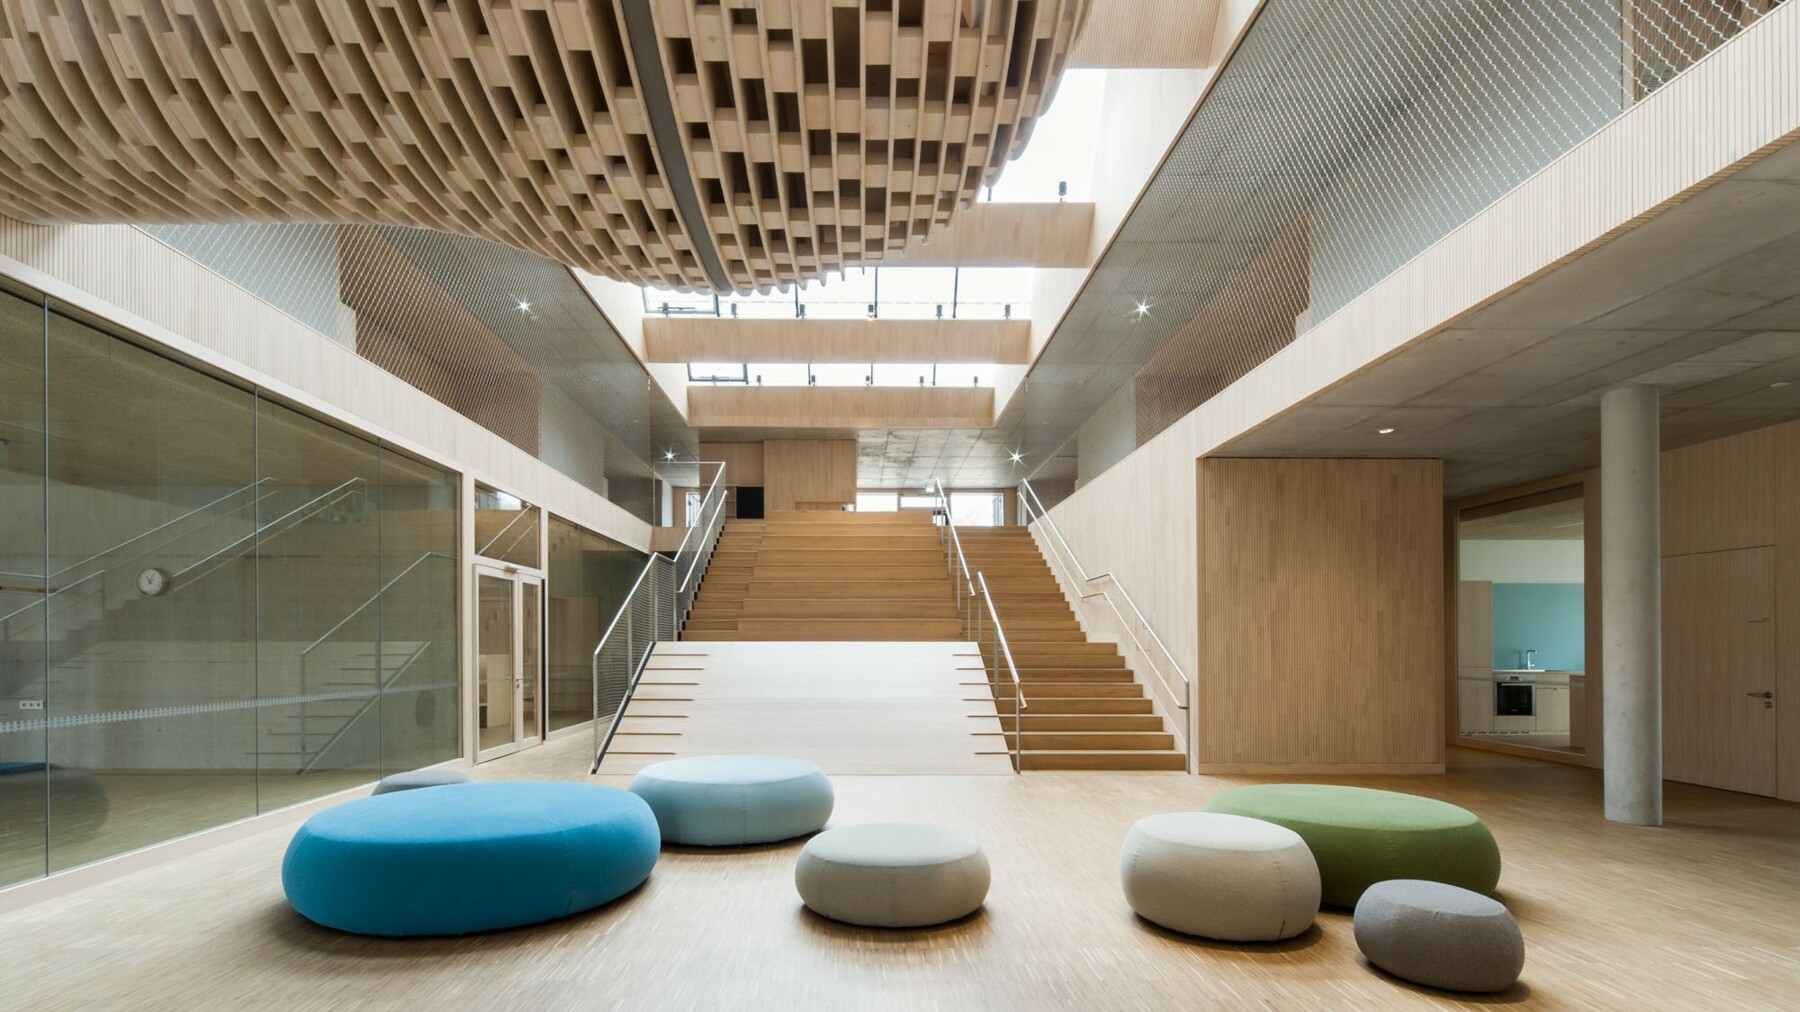 Die breite tribünenartige Treppenanlage bildet die Verbindung zwischen Foyer und OG. Farbige Sitzpolster lockern den von Holz, Glas und Metall dominierten Raum auf.